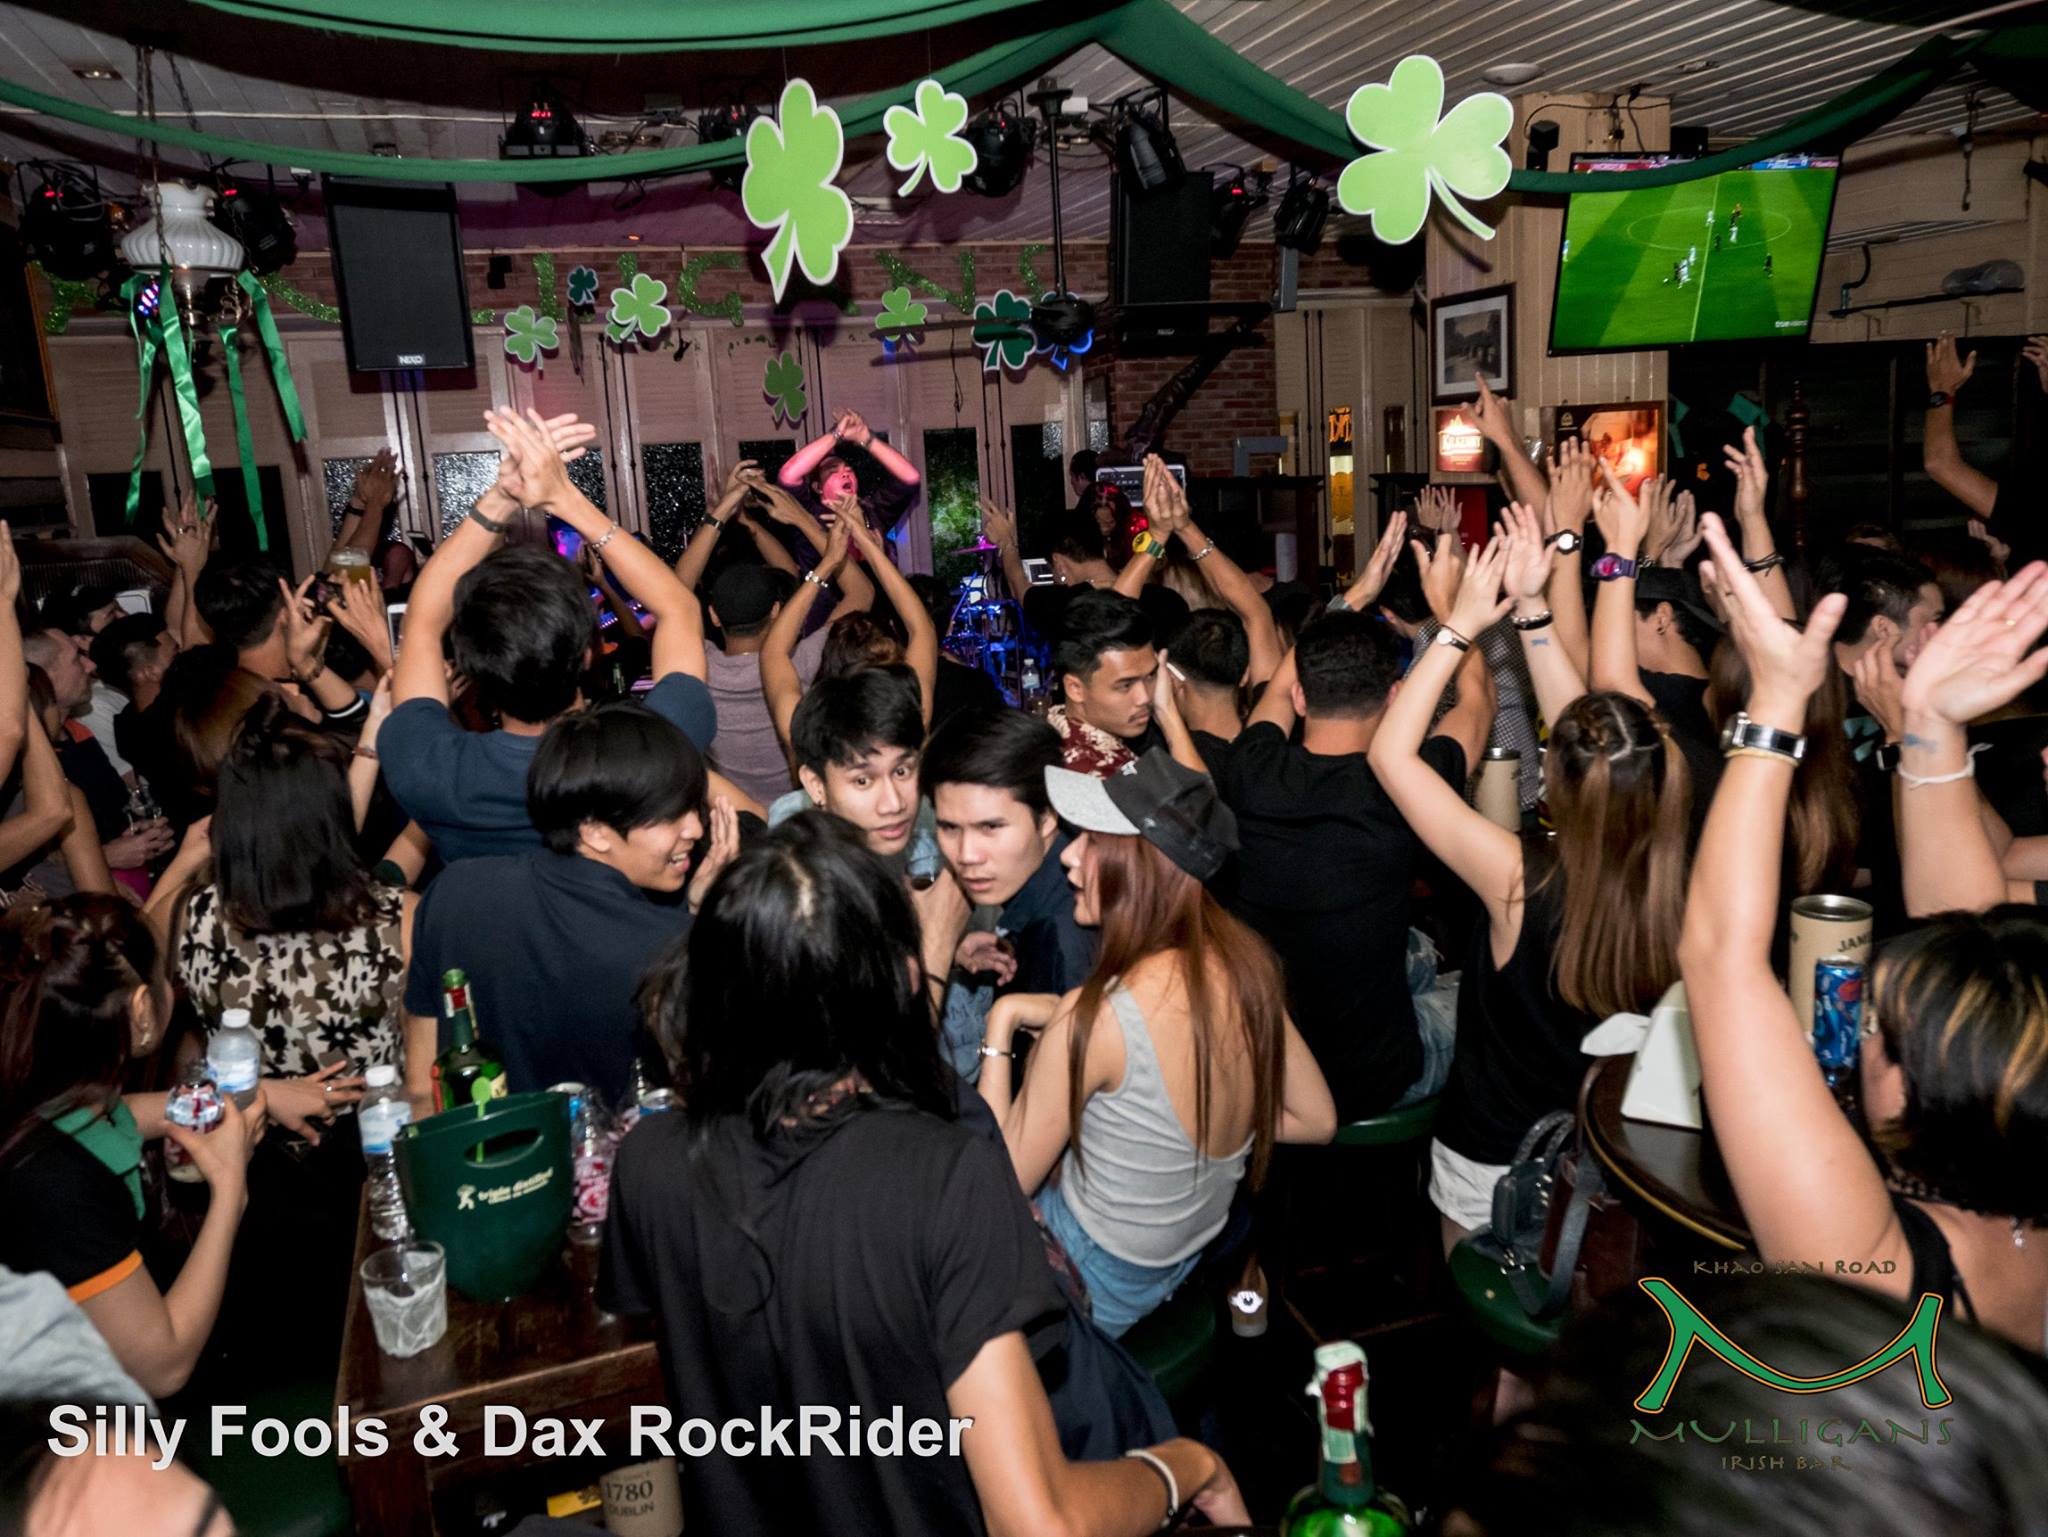 มัลลิแกนส์ ไอริช บาร์ ข้าวสาร (Mulligans Irish Bar Khaosan Road) : กรุงเทพมหานคร (Bangkok)